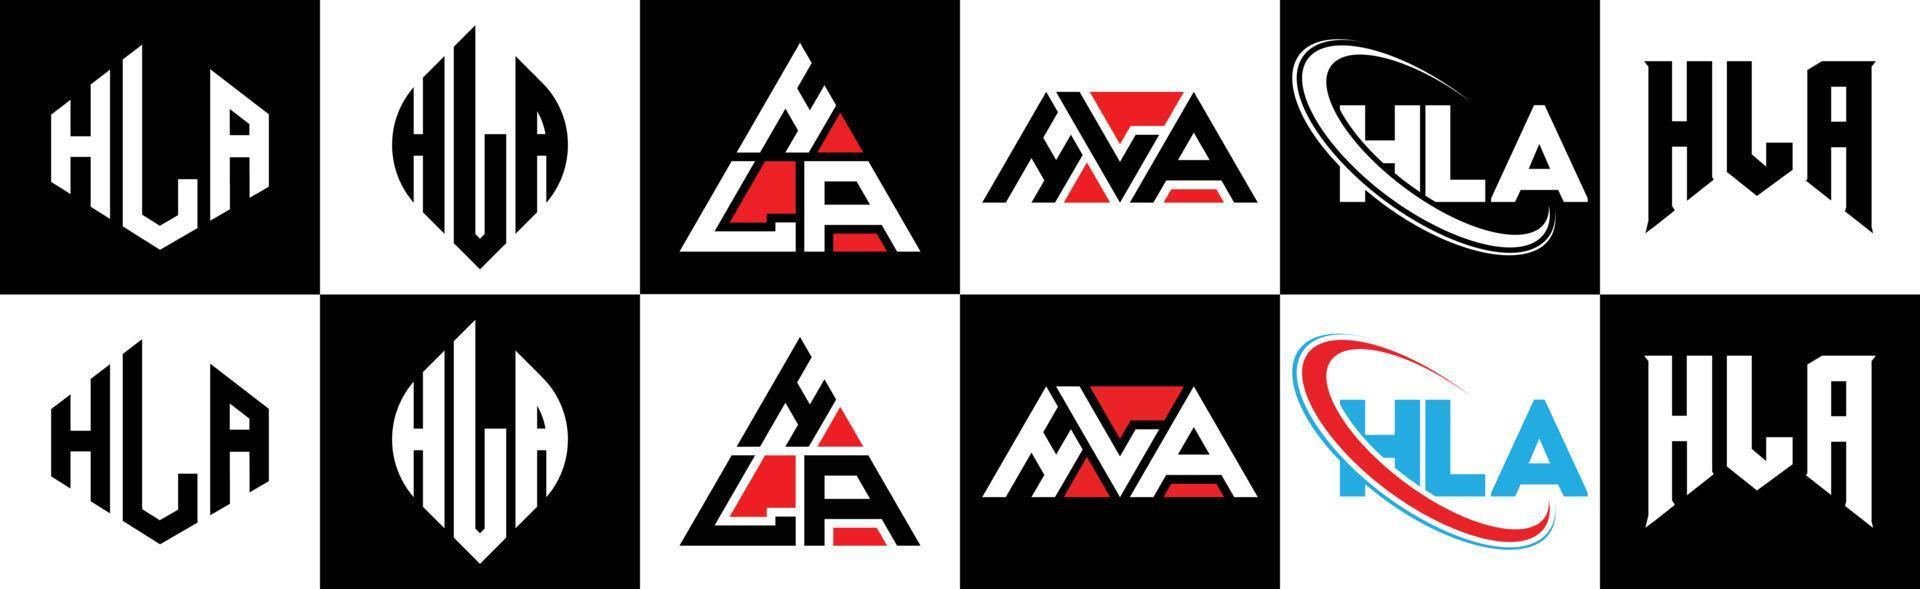 création de logo de lettre hla en six styles. hla polygone, cercle, triangle, hexagone, style plat et simple avec logo de lettre de variation de couleur noir et blanc dans un plan de travail. hla logo minimaliste et classique vecteur